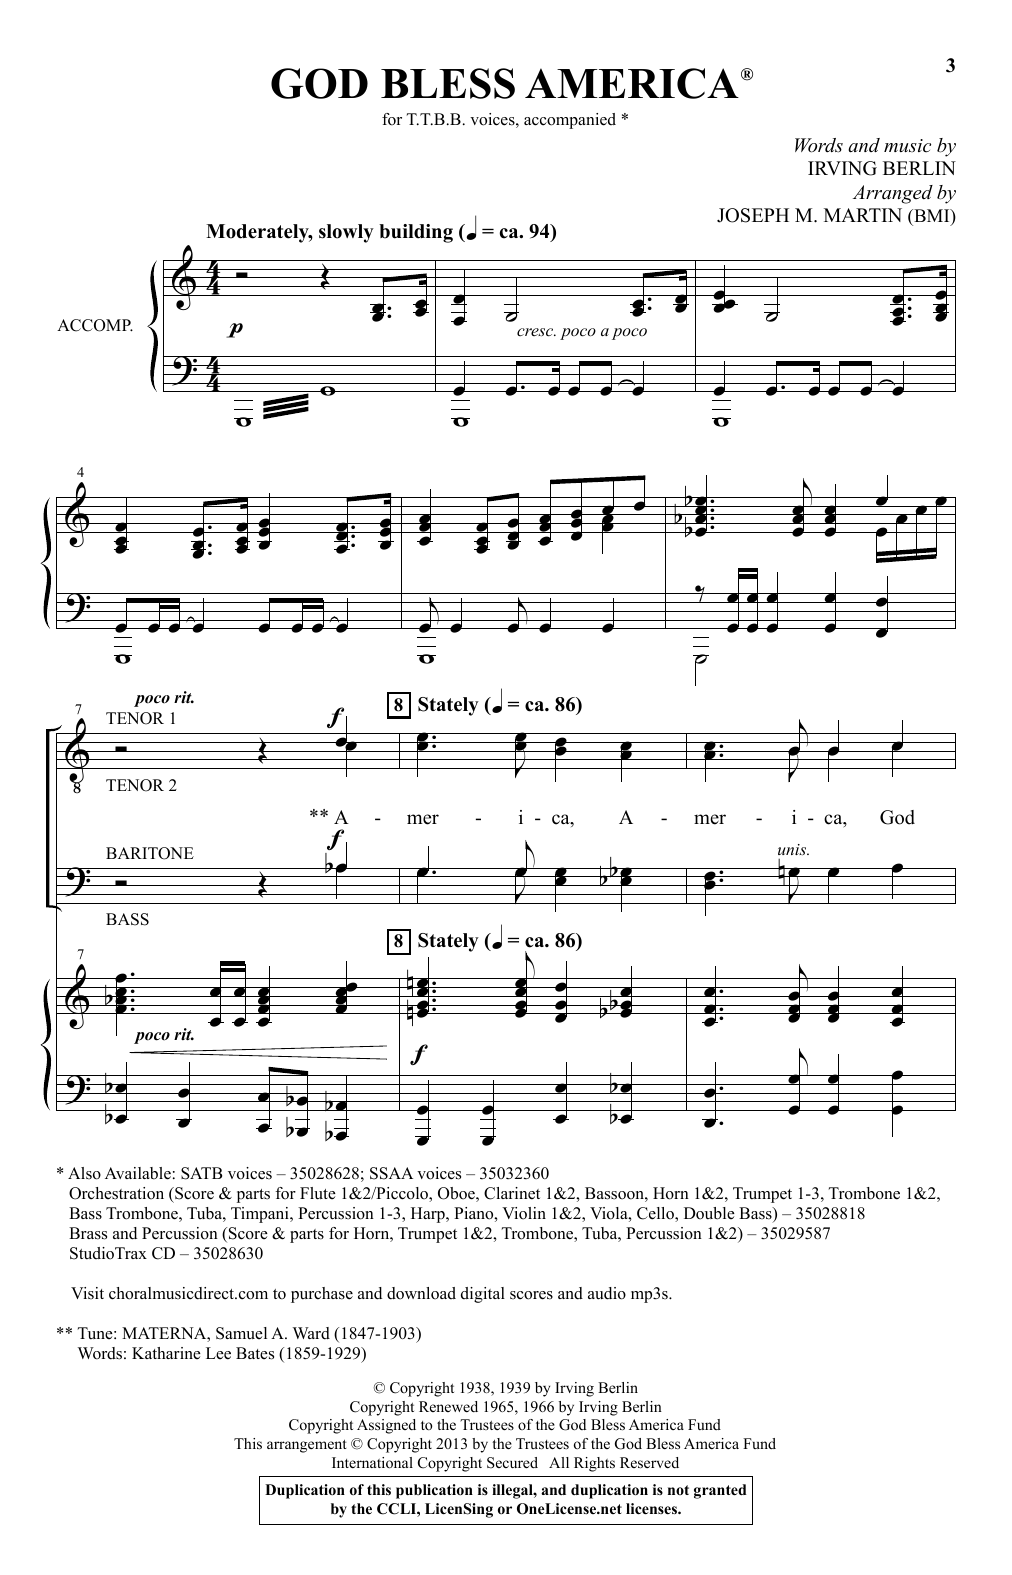 choir accompaniment tracks